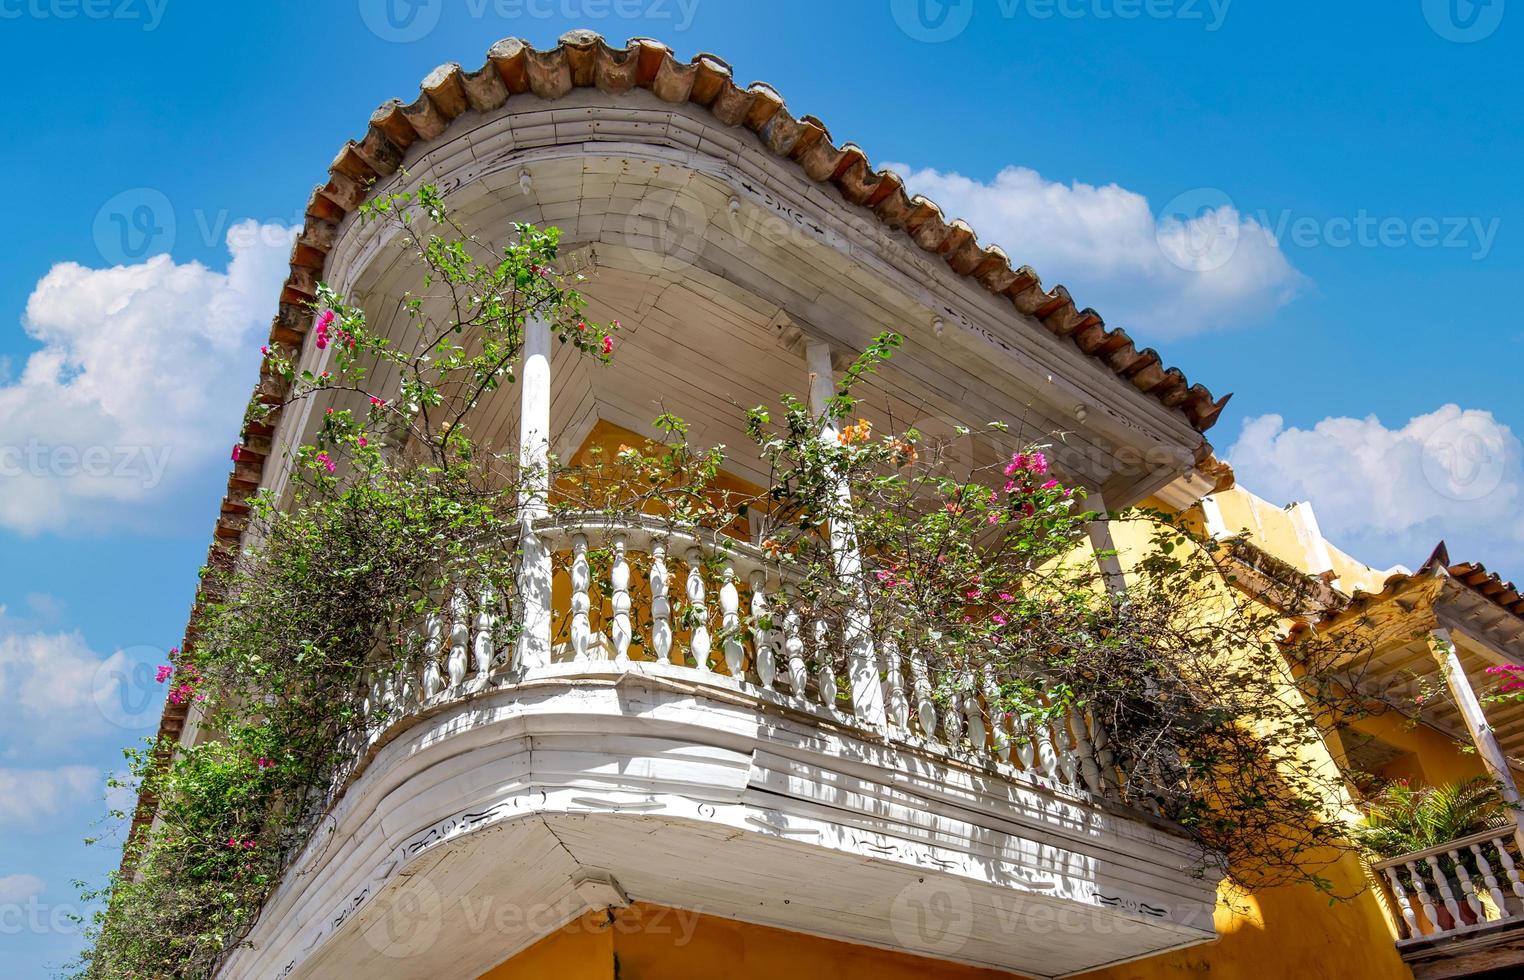 célèbre ville coloniale fortifiée de cartagena, cuidad amurrallada, et ses bâtiments colorés dans le centre-ville historique, site classé au patrimoine mondial de l'unesco photo